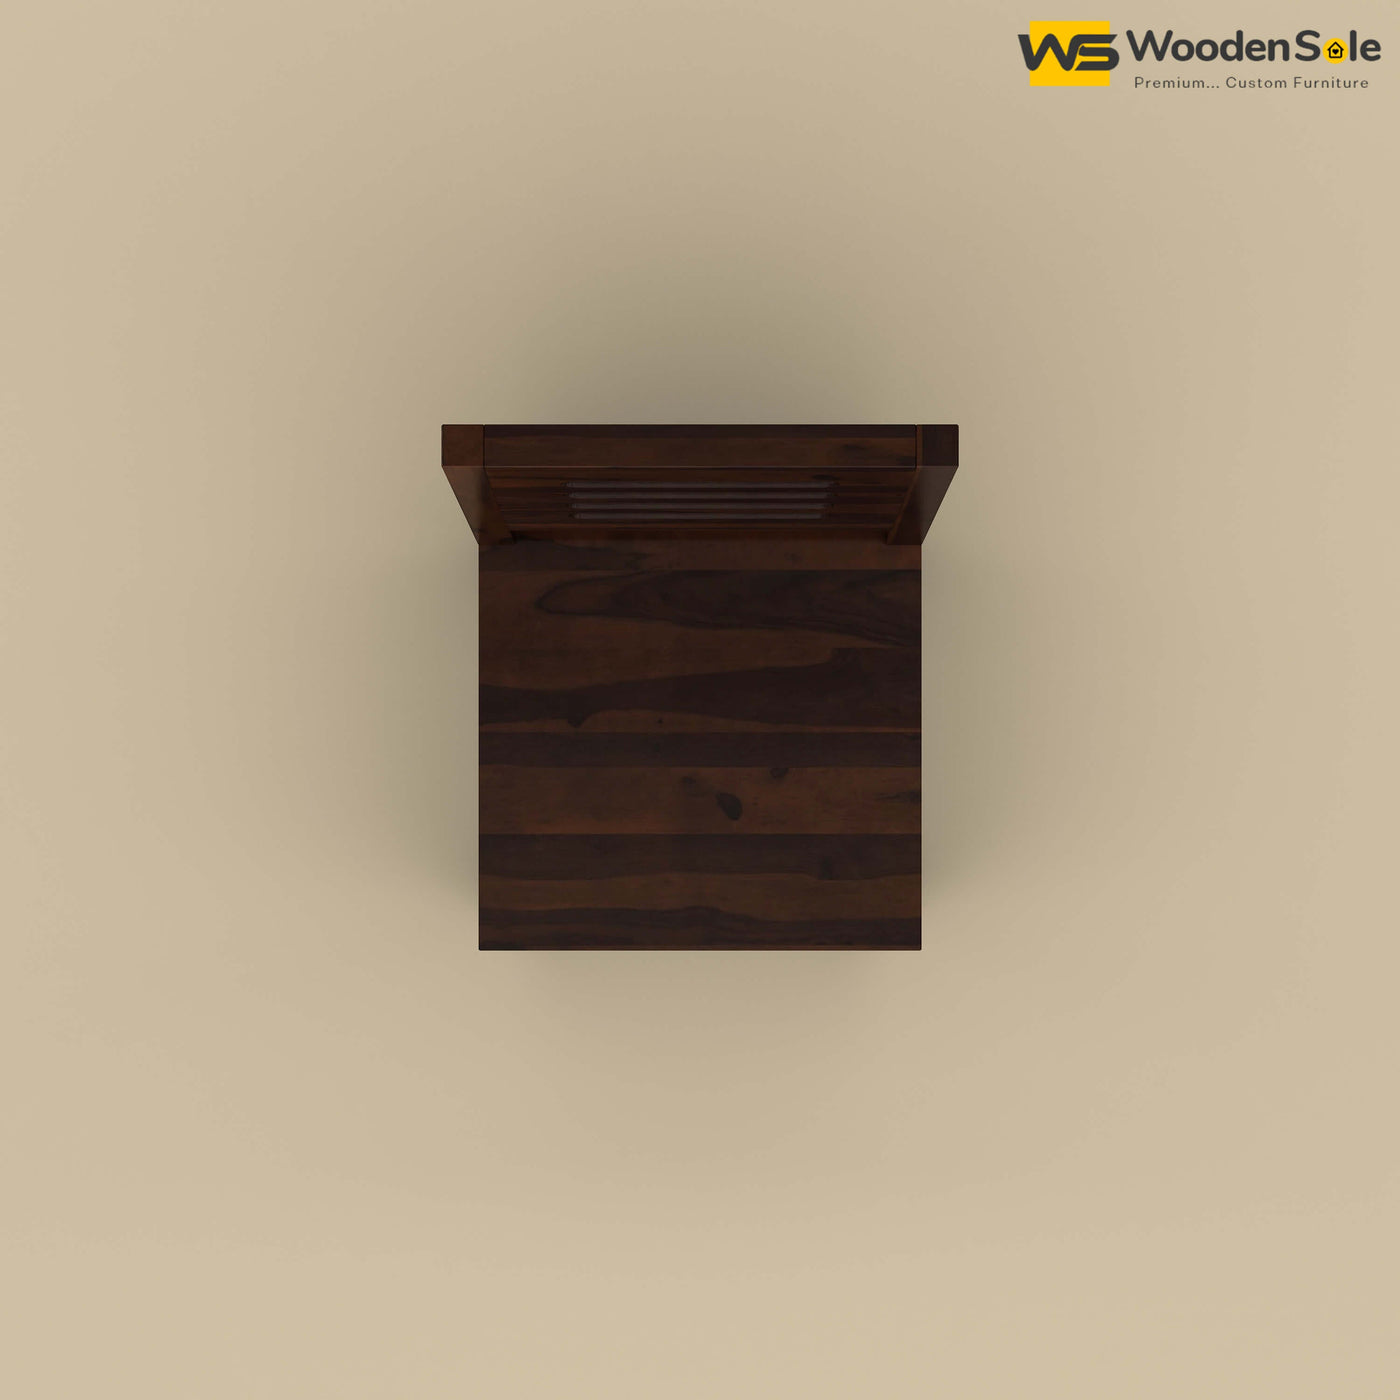 Sheesham Wood 6 Seater Dining Table Set (Walnut Finish)